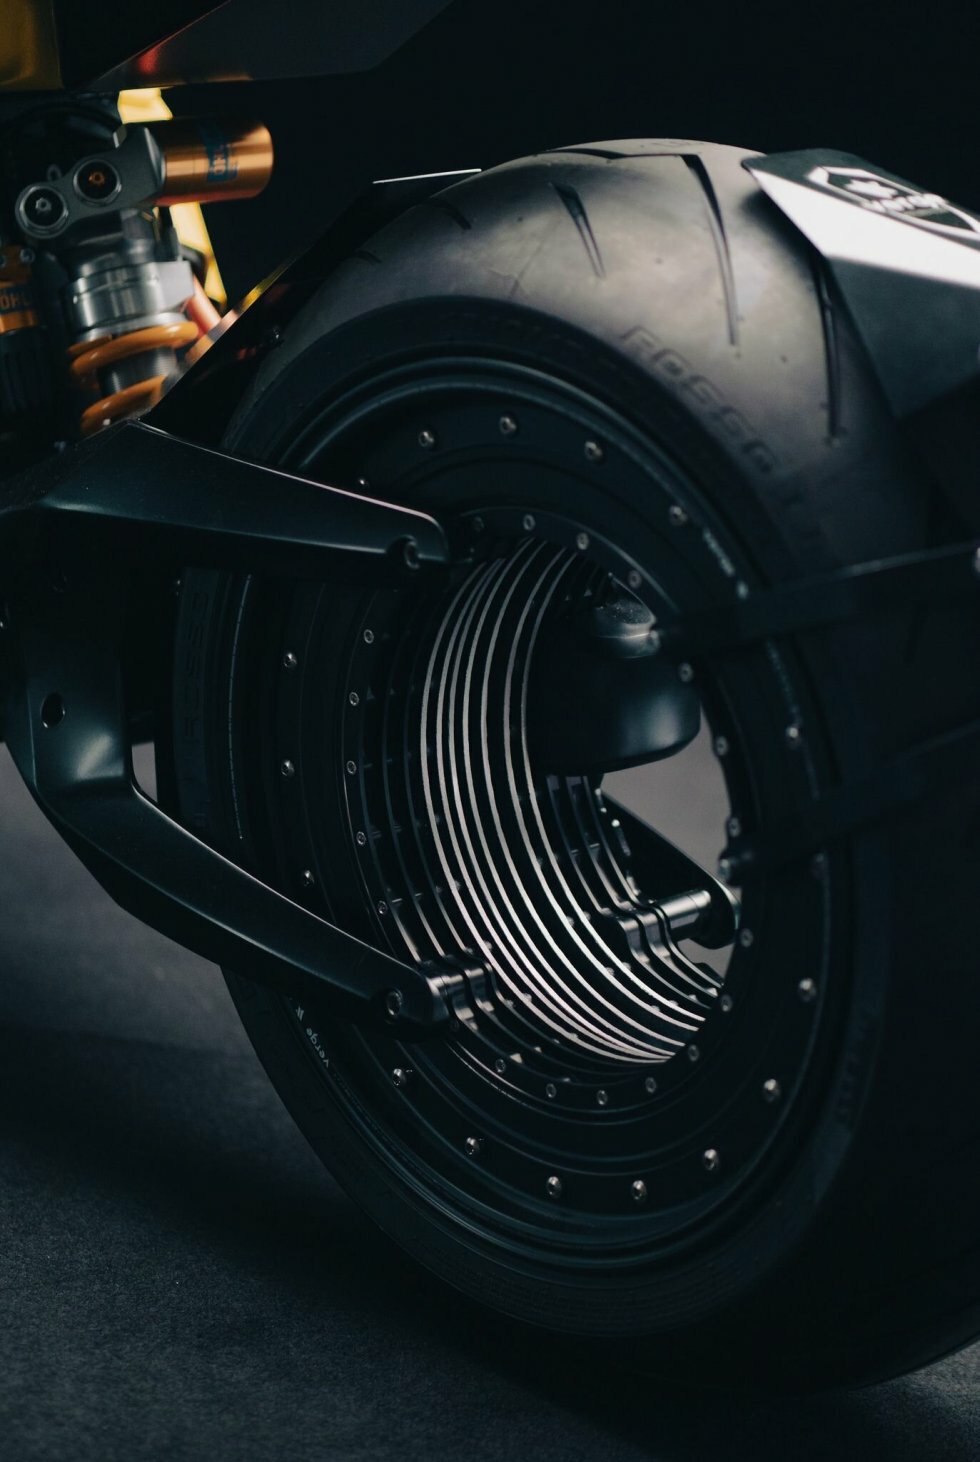 Verge TS - Verge Motorcycles - Verge TS Ultra er et bæst af en elektrisk motorcykel